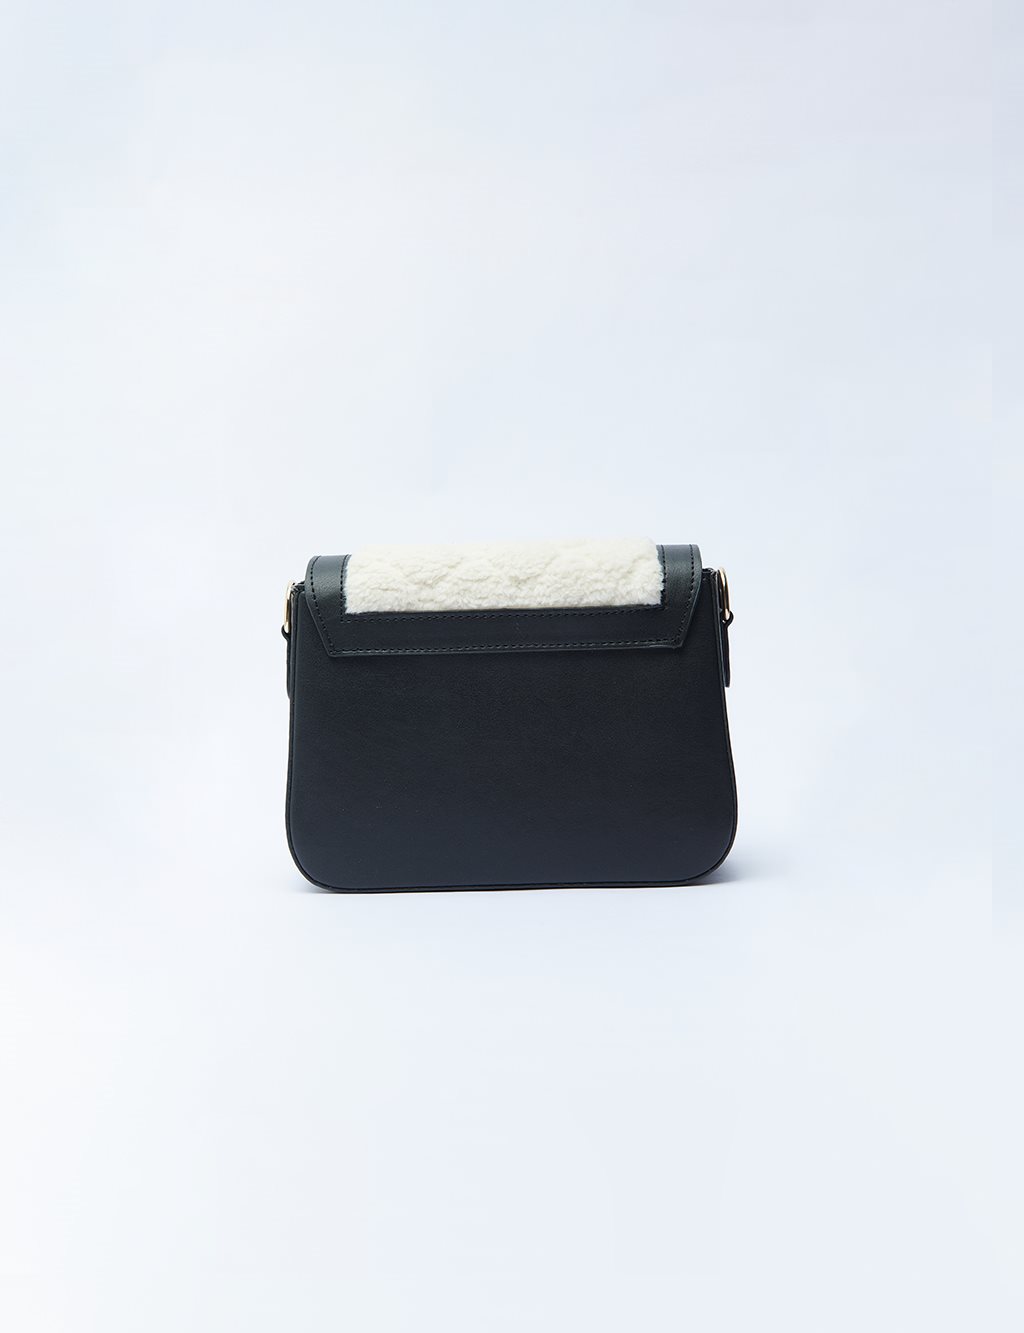 Houndstooth Patterned Square Form Bag Cream Black